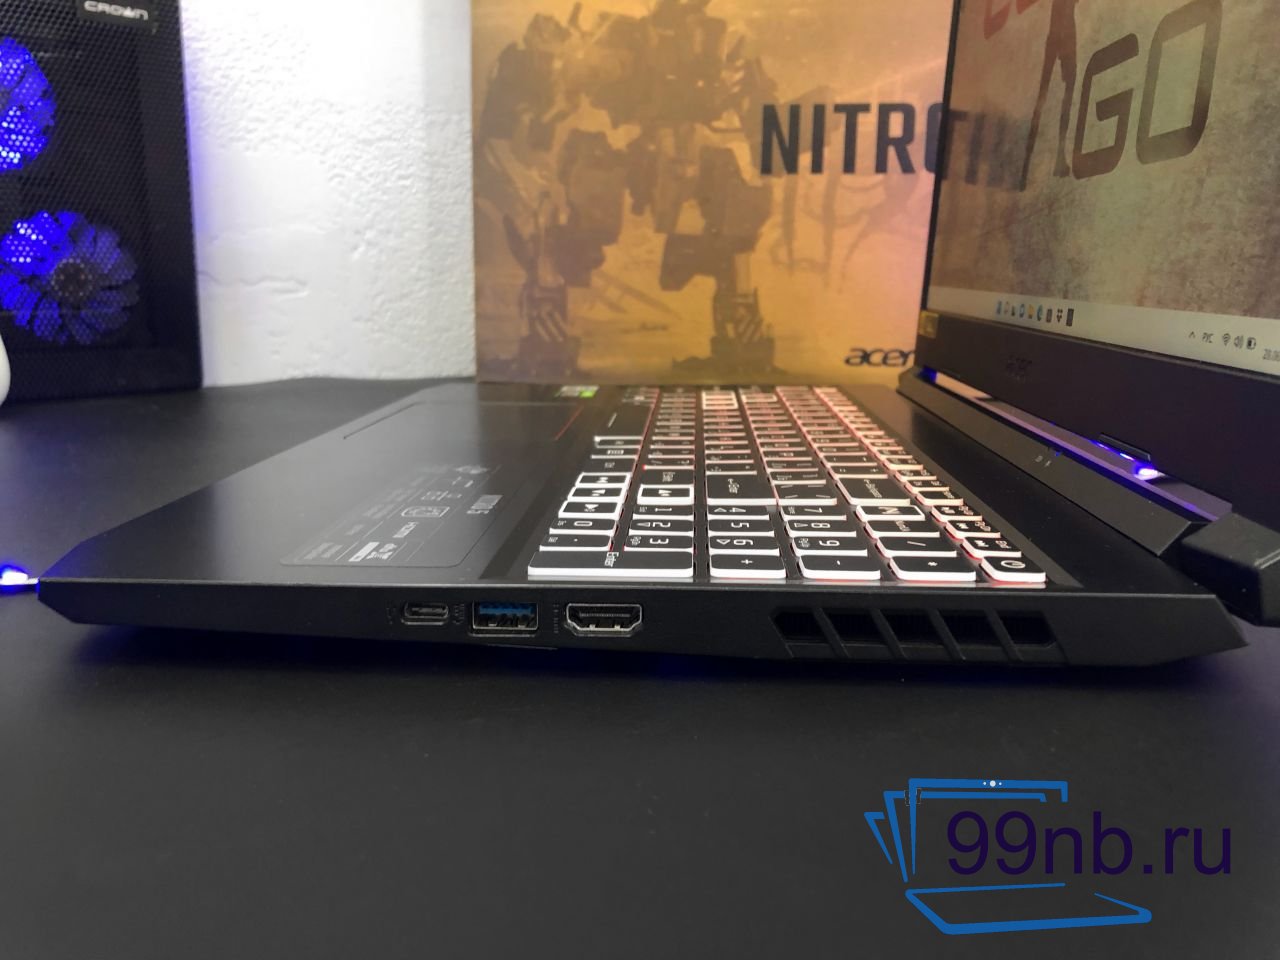  Игровой Acer Nitro 5 на i5/RTX 3060 для кс го